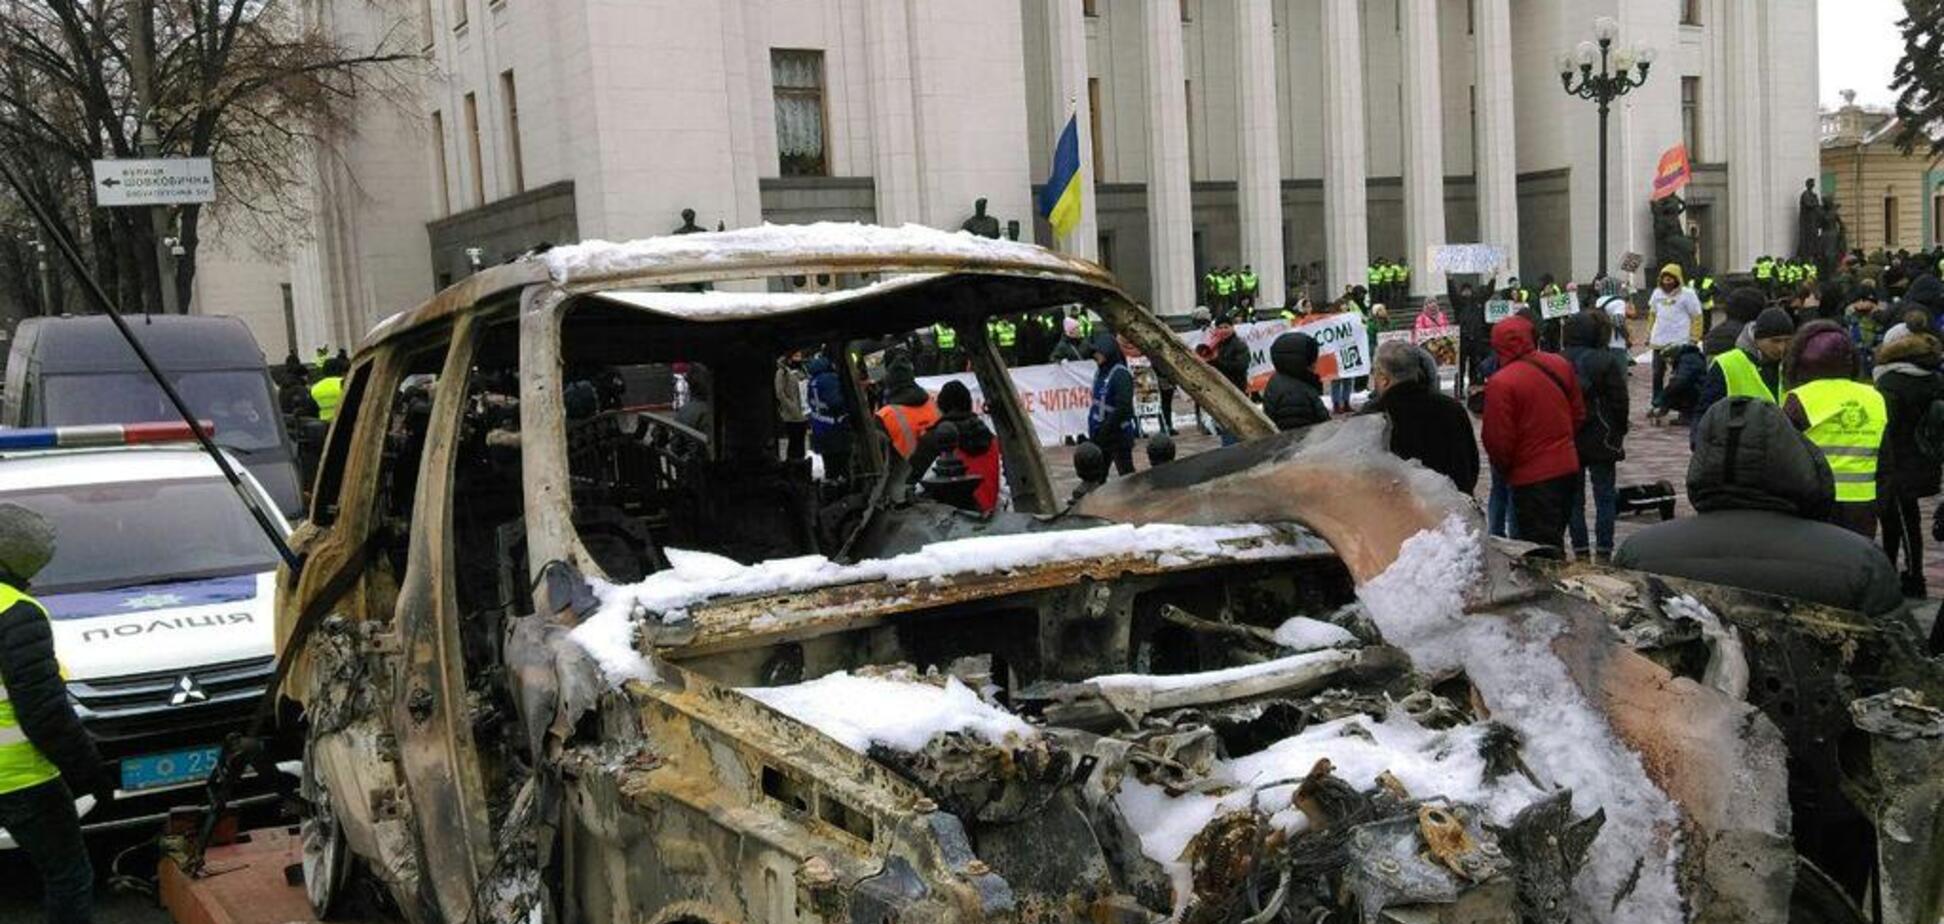 ''Евробляхеры'' парализовали центр Киева: все подробности